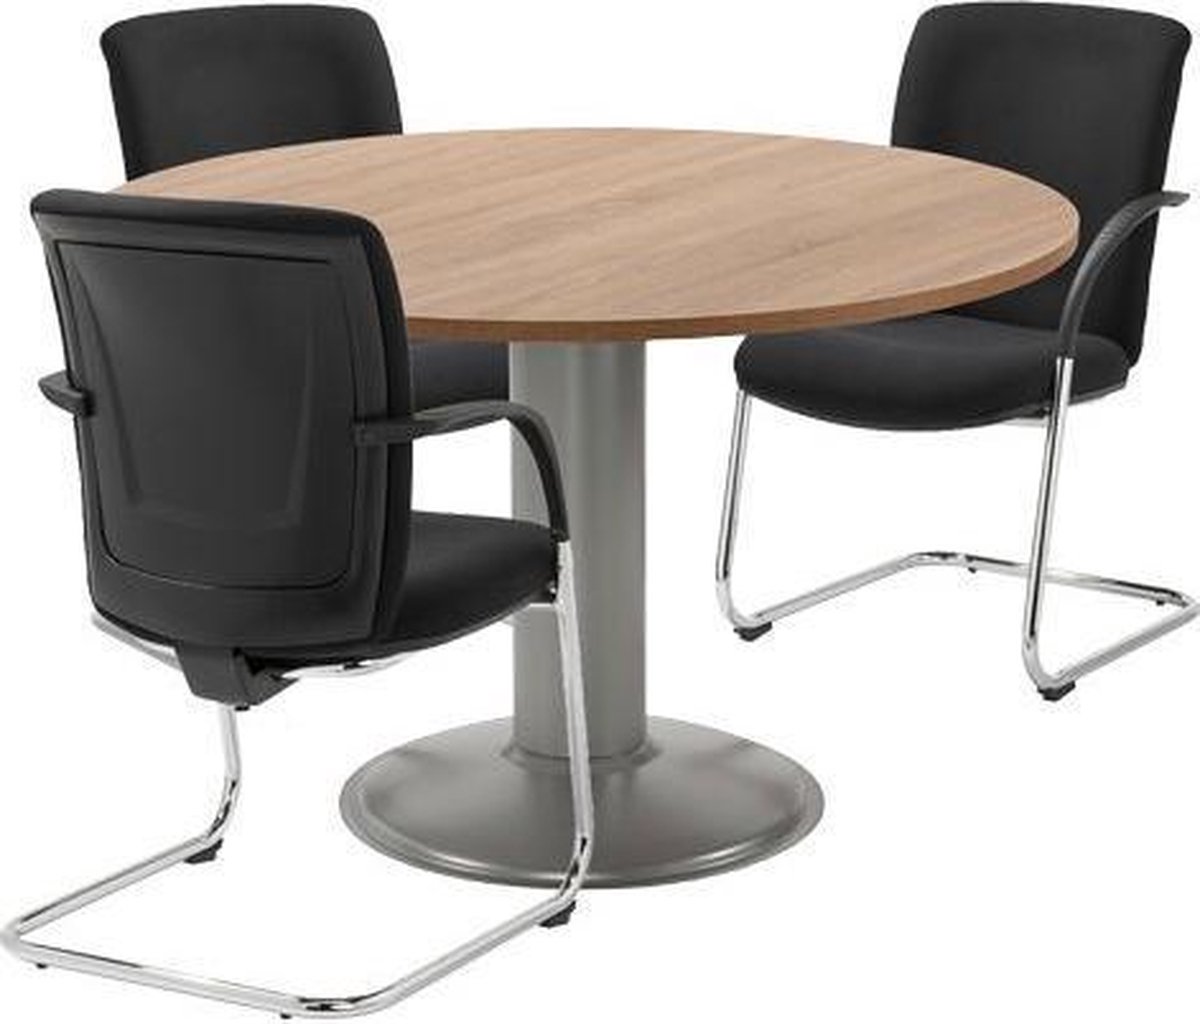 Vergadertafel - Ronde tafel - voor kantoor - 120 cm rond - blad natuur eiken - wit onderstel - eenvoudig zelf te monteren